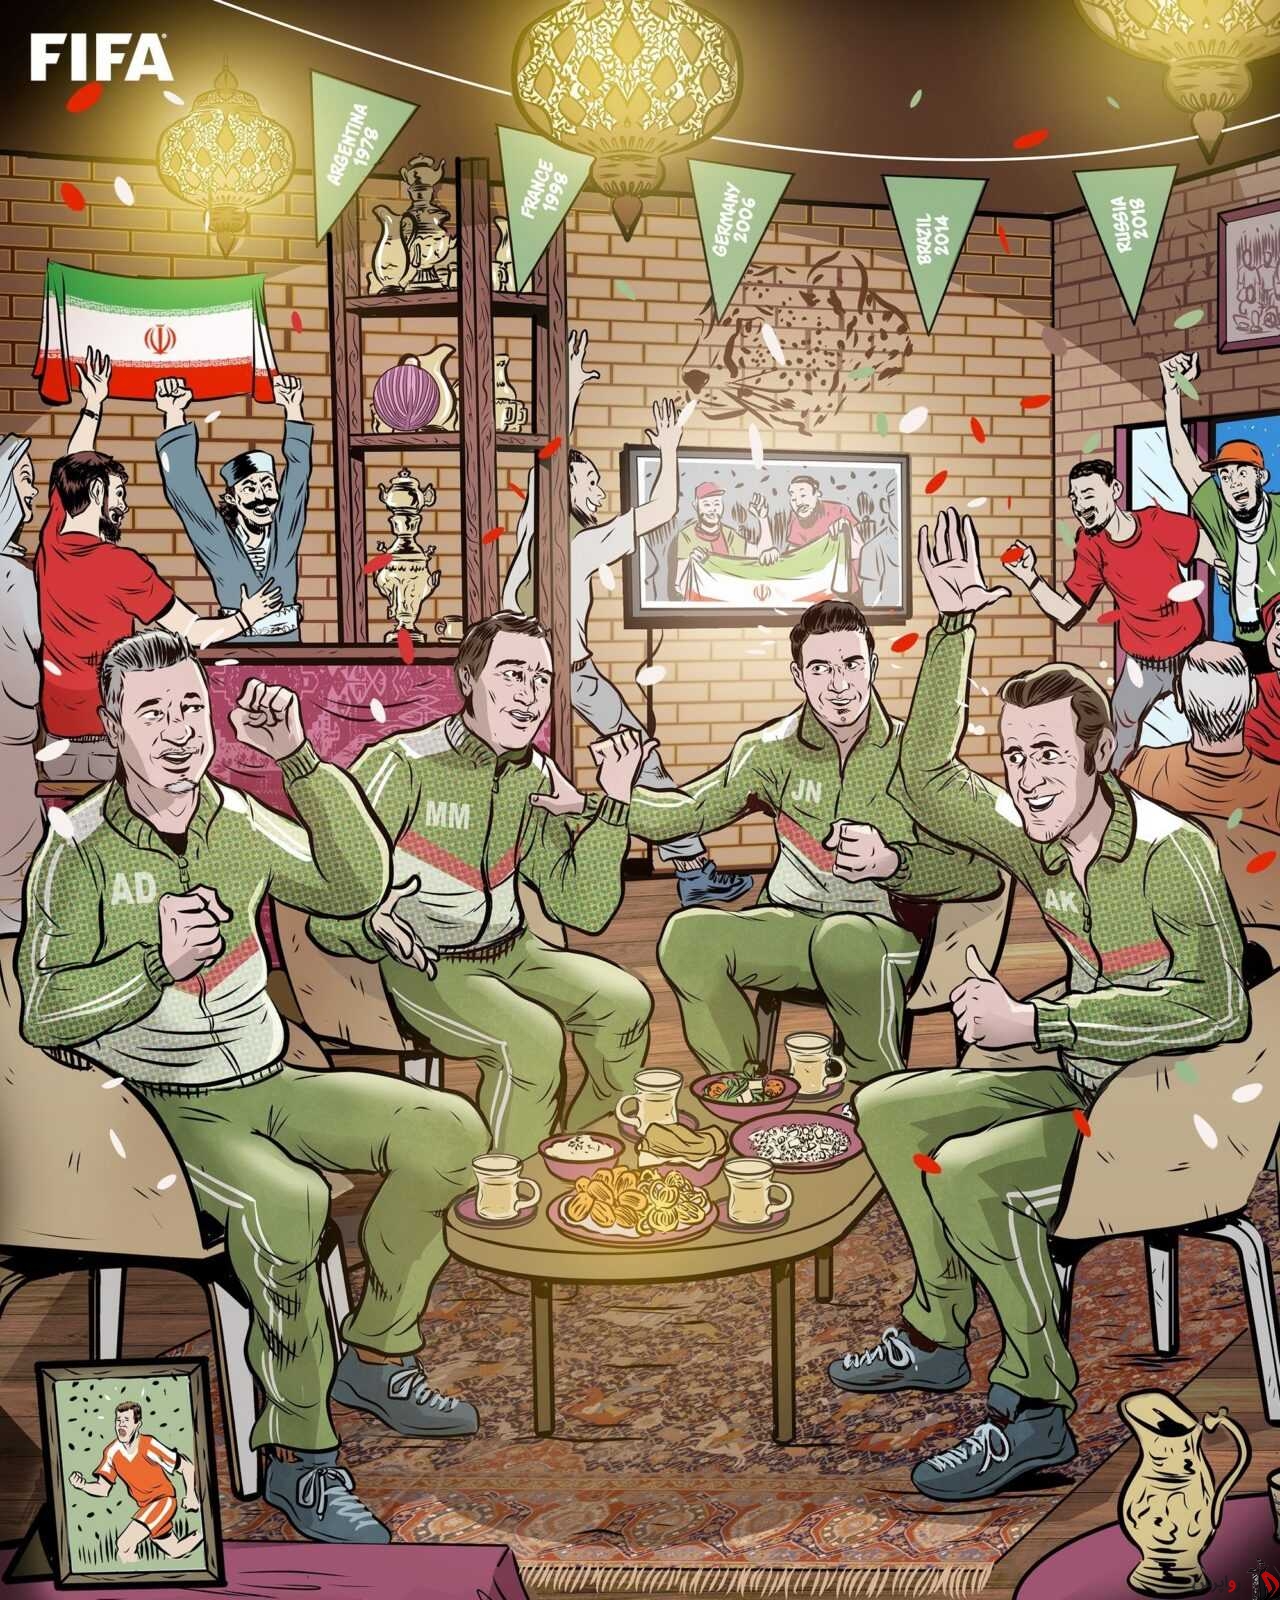 واکنش صفحات AFC و لیگ قهرمانان اروپا به صعود ایران به جام جهانی/ کاریکاتور جالب فیفا از ۴ ایرانی